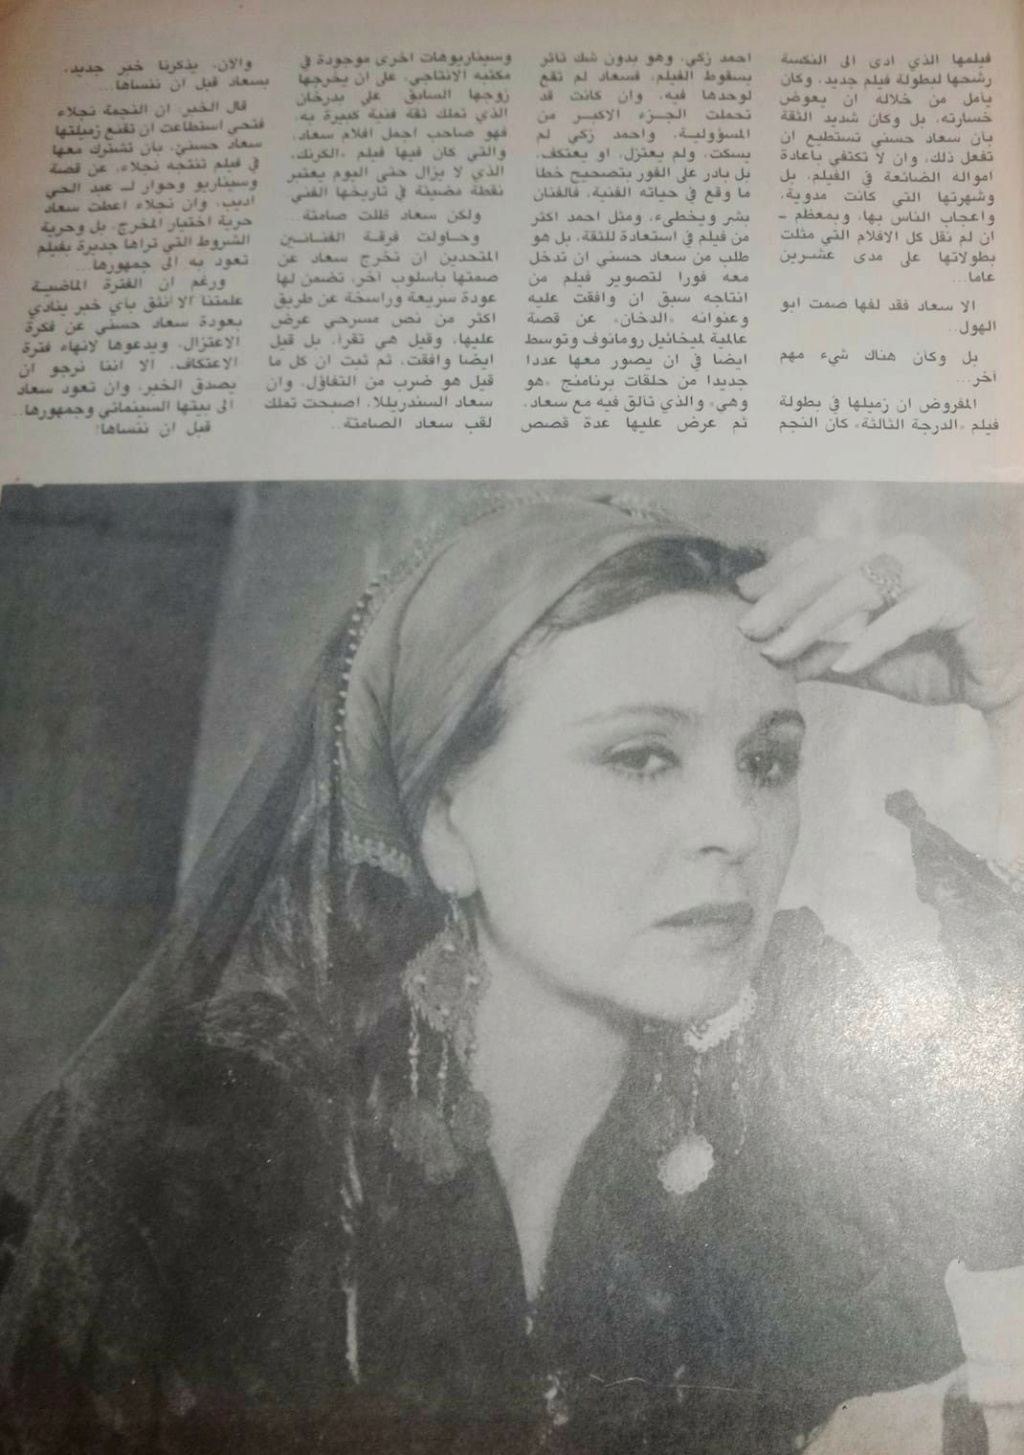 مقال صحفي : سعاد حسني صامتة مثل .. أبو الهول 1990 م 2114